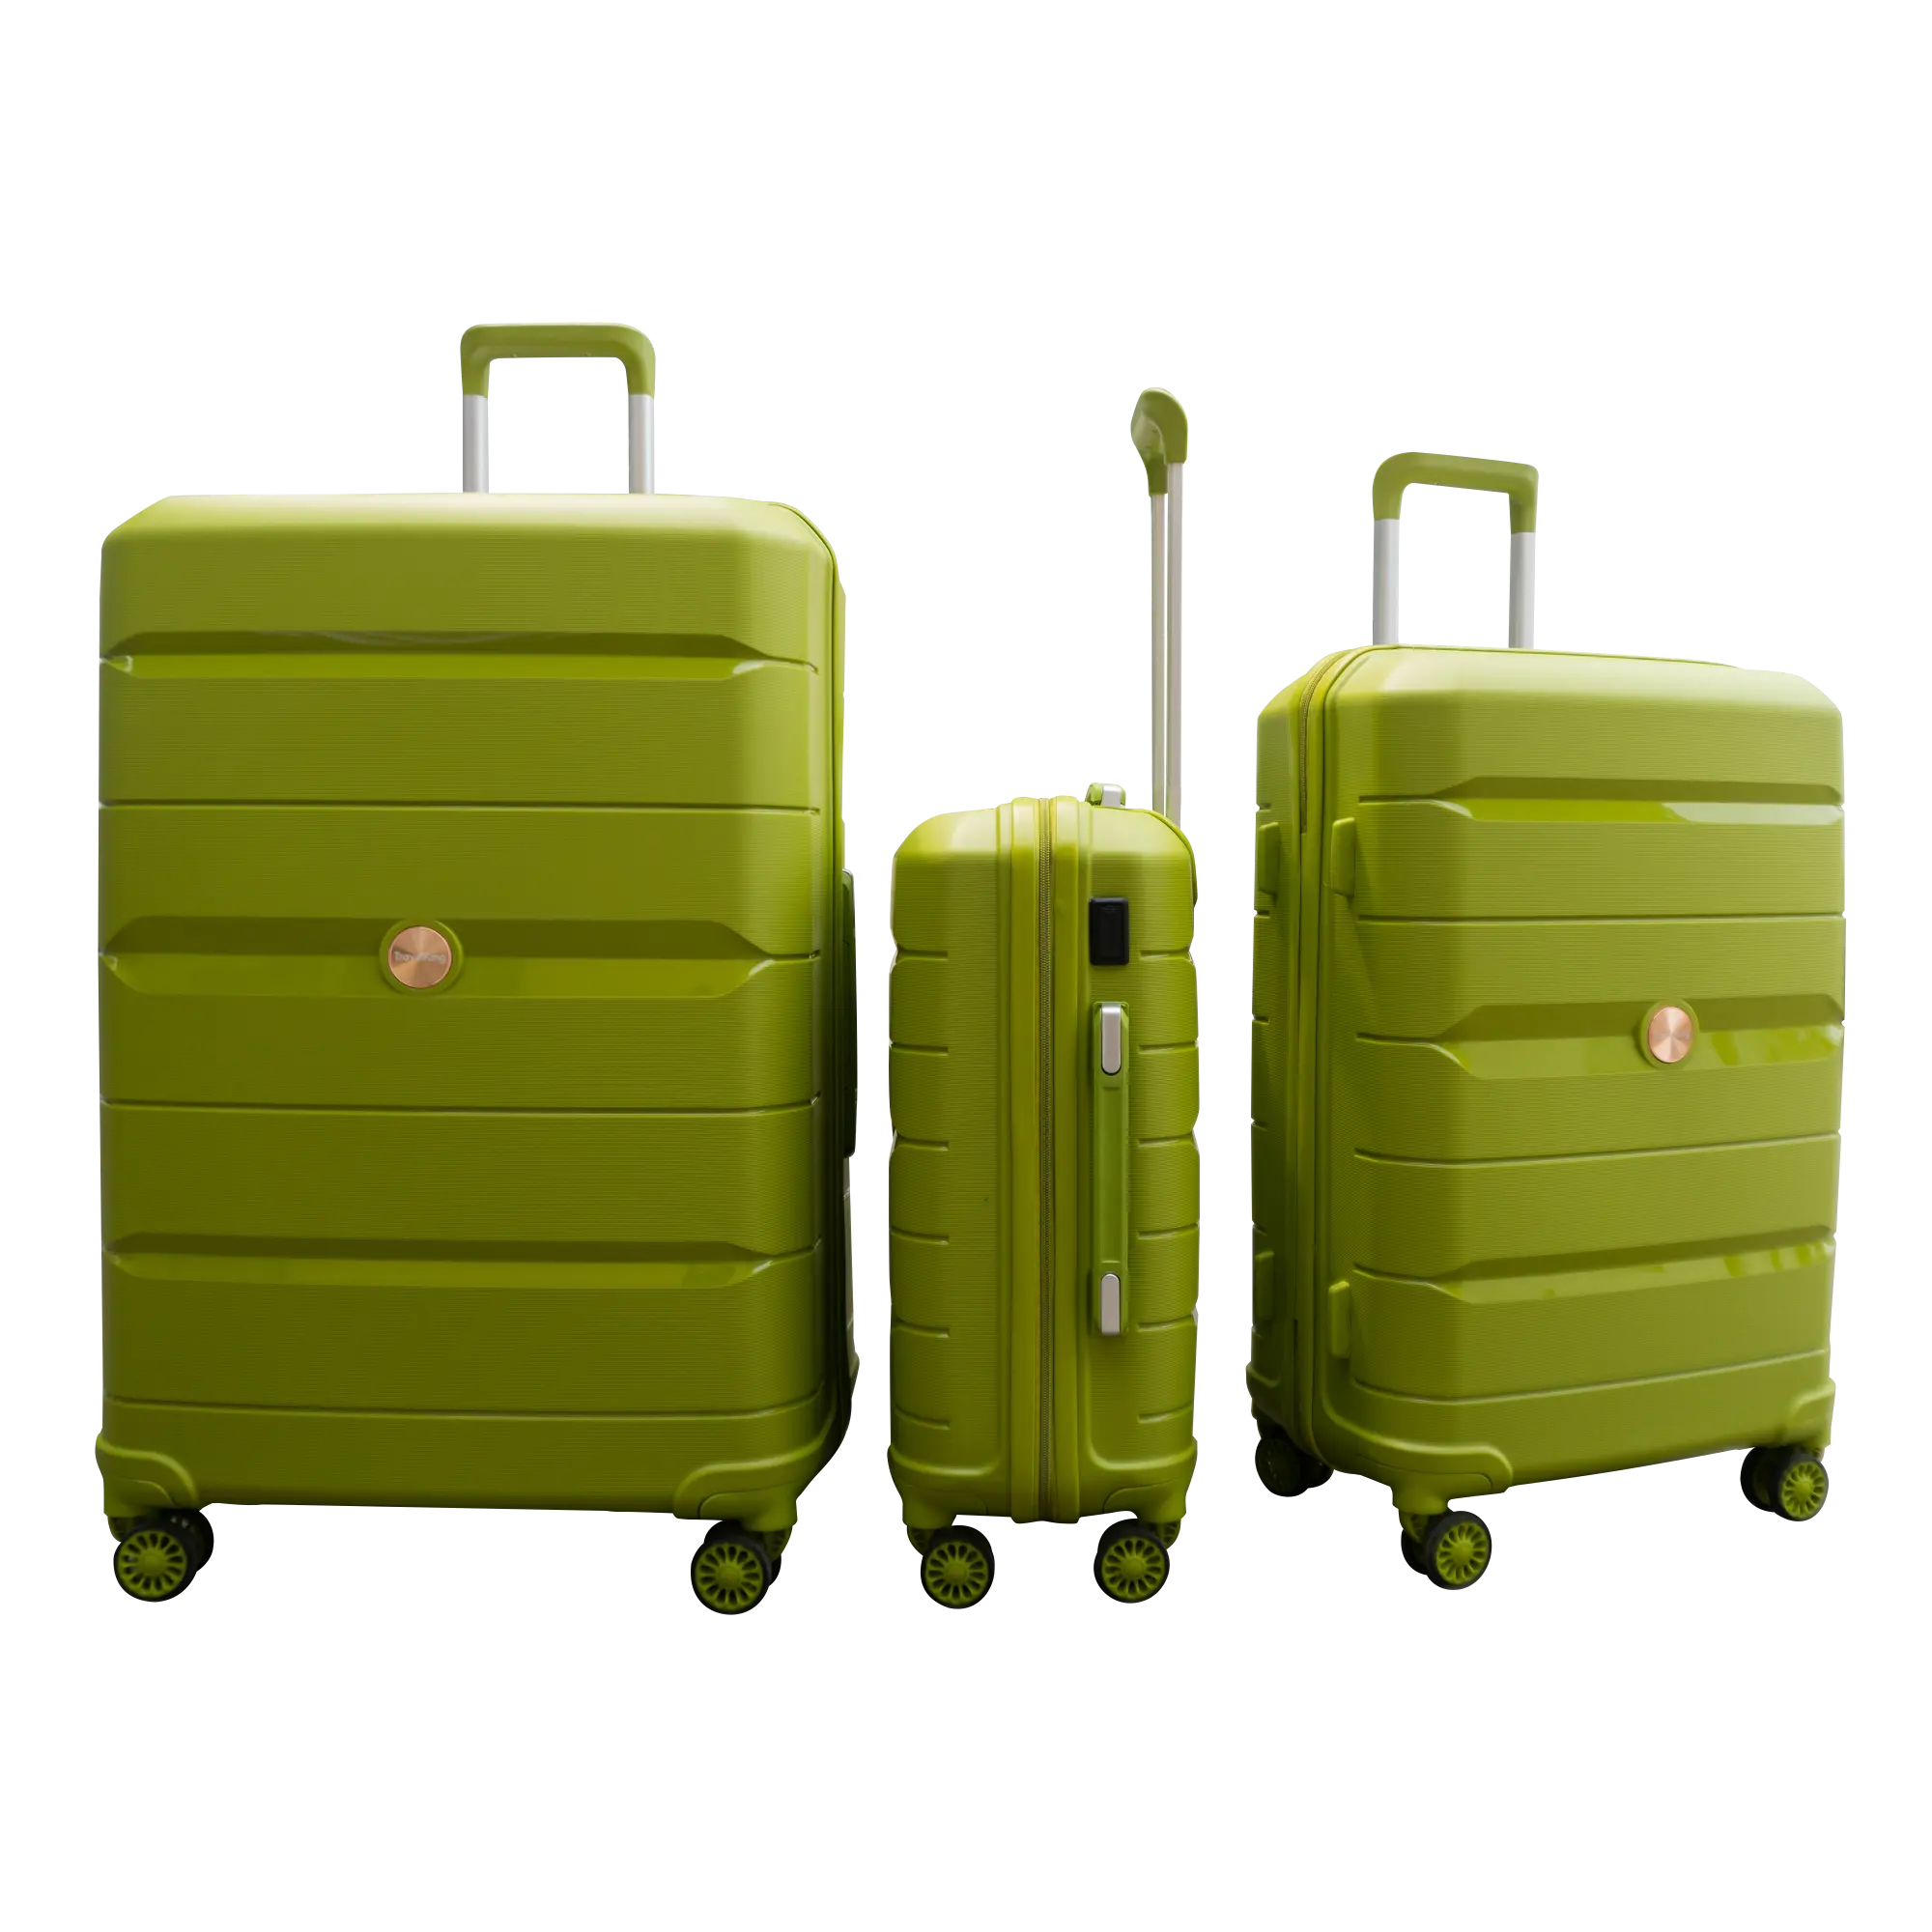 Hungphate bán buôn du lịch cần thiết vali hành lý Bộ PP không thể phá vỡ Chất liệu Việt Nam Nhà sản xuất châu Á nóng bán